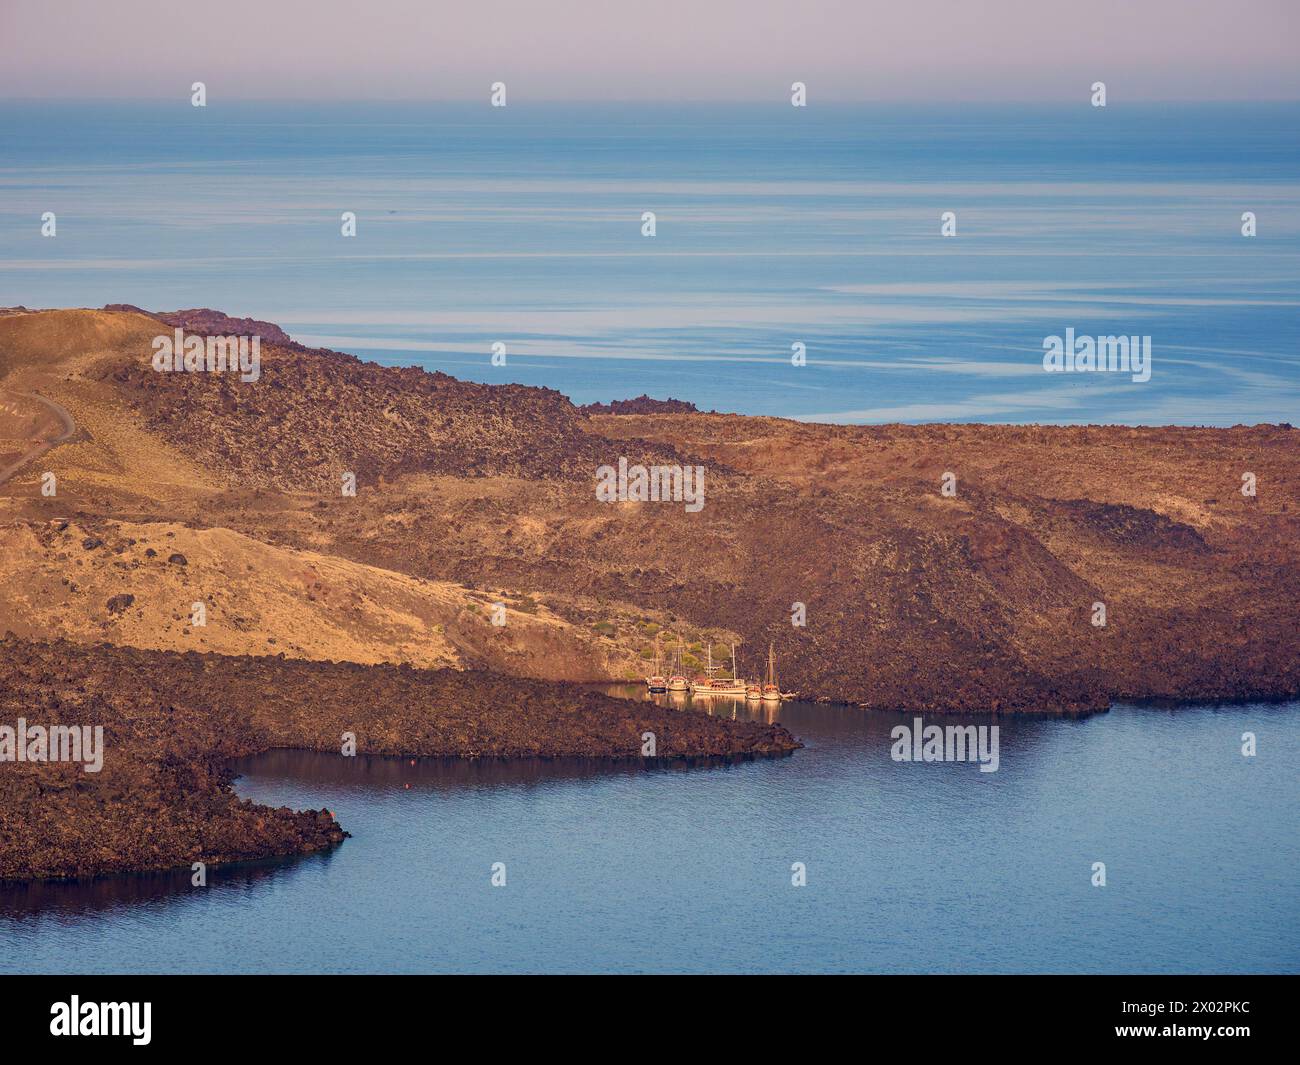 Vulcano Nea Kameni alla caldera vista da Fira, alba, isola di Santorini (Thira), Cicladi, isole greche, Grecia, Europa Foto Stock